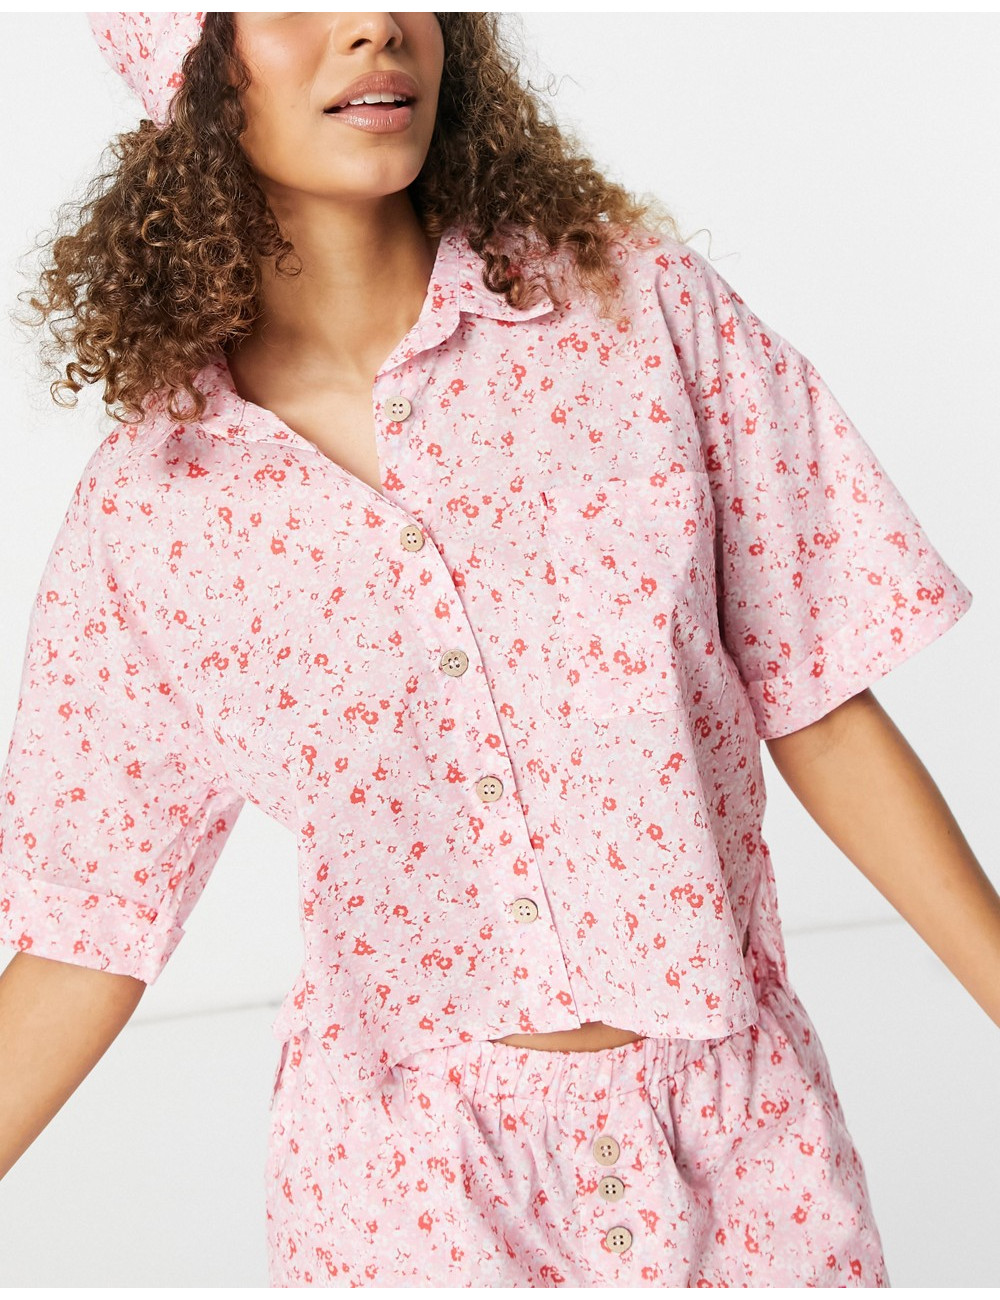 Cotton:On 3 piece pyjamas...